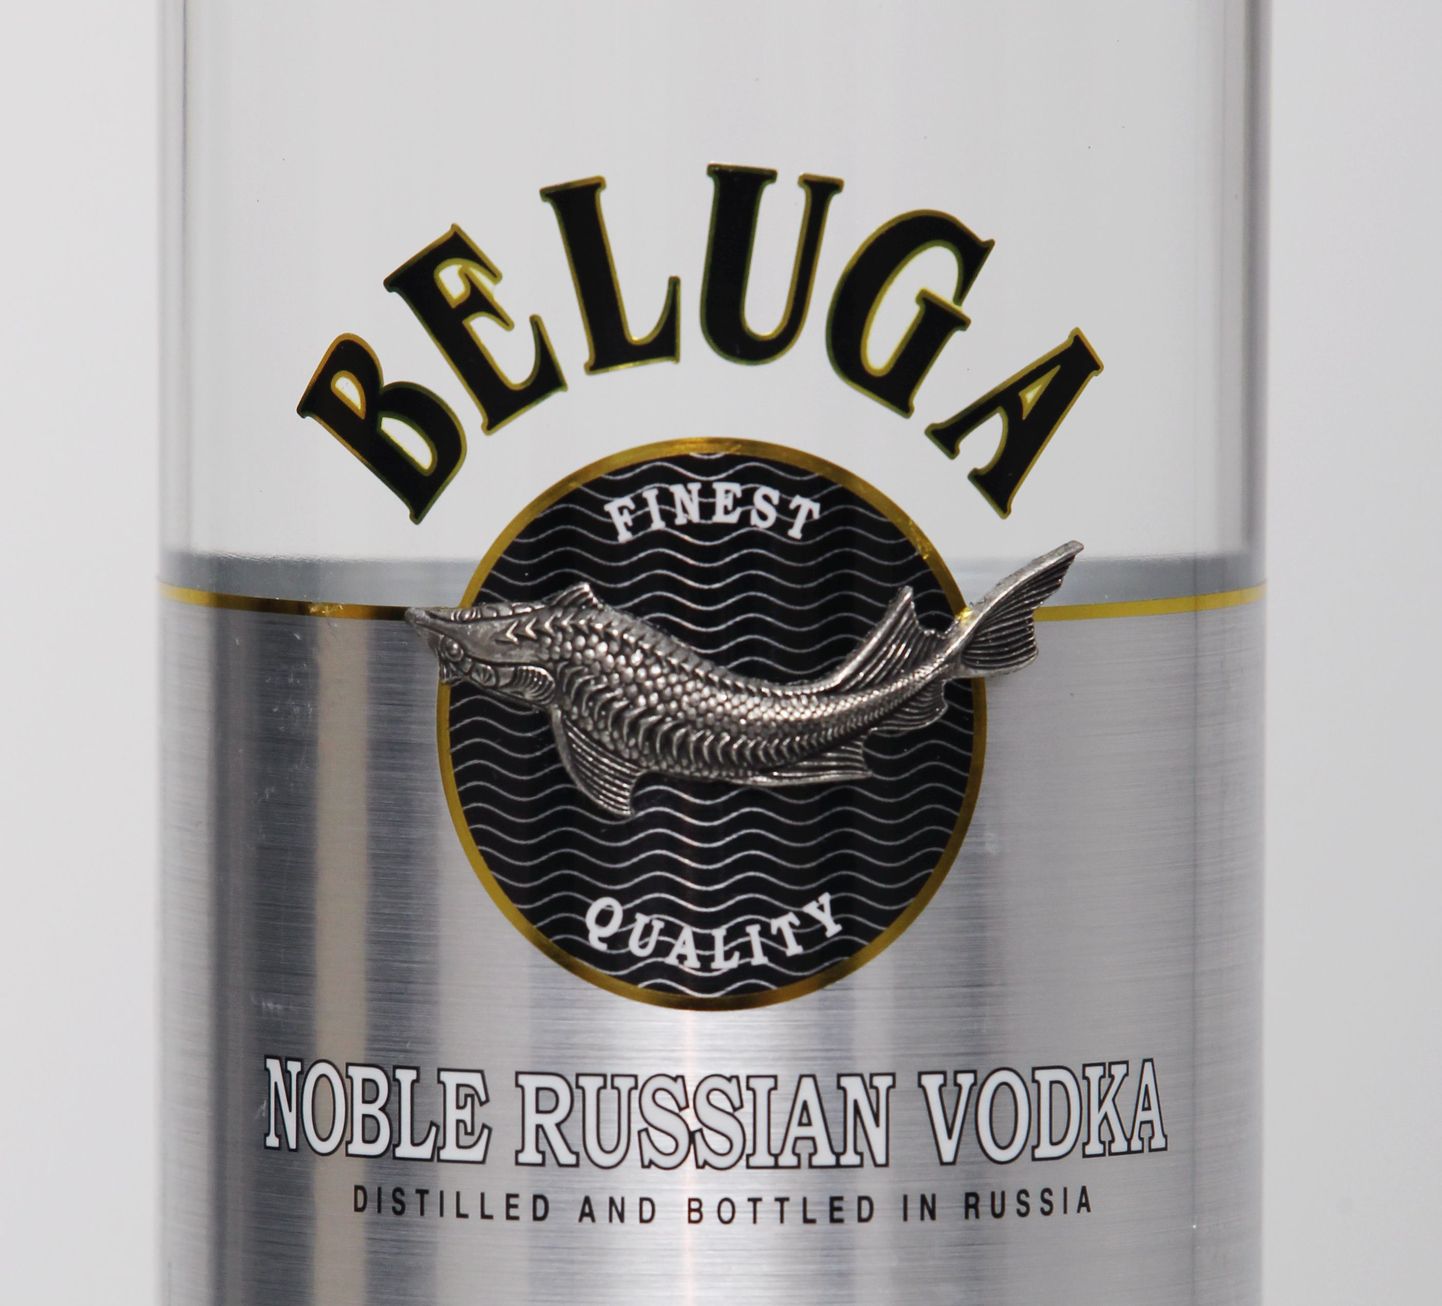 Venemaal valmistatud vodka BELUGA.